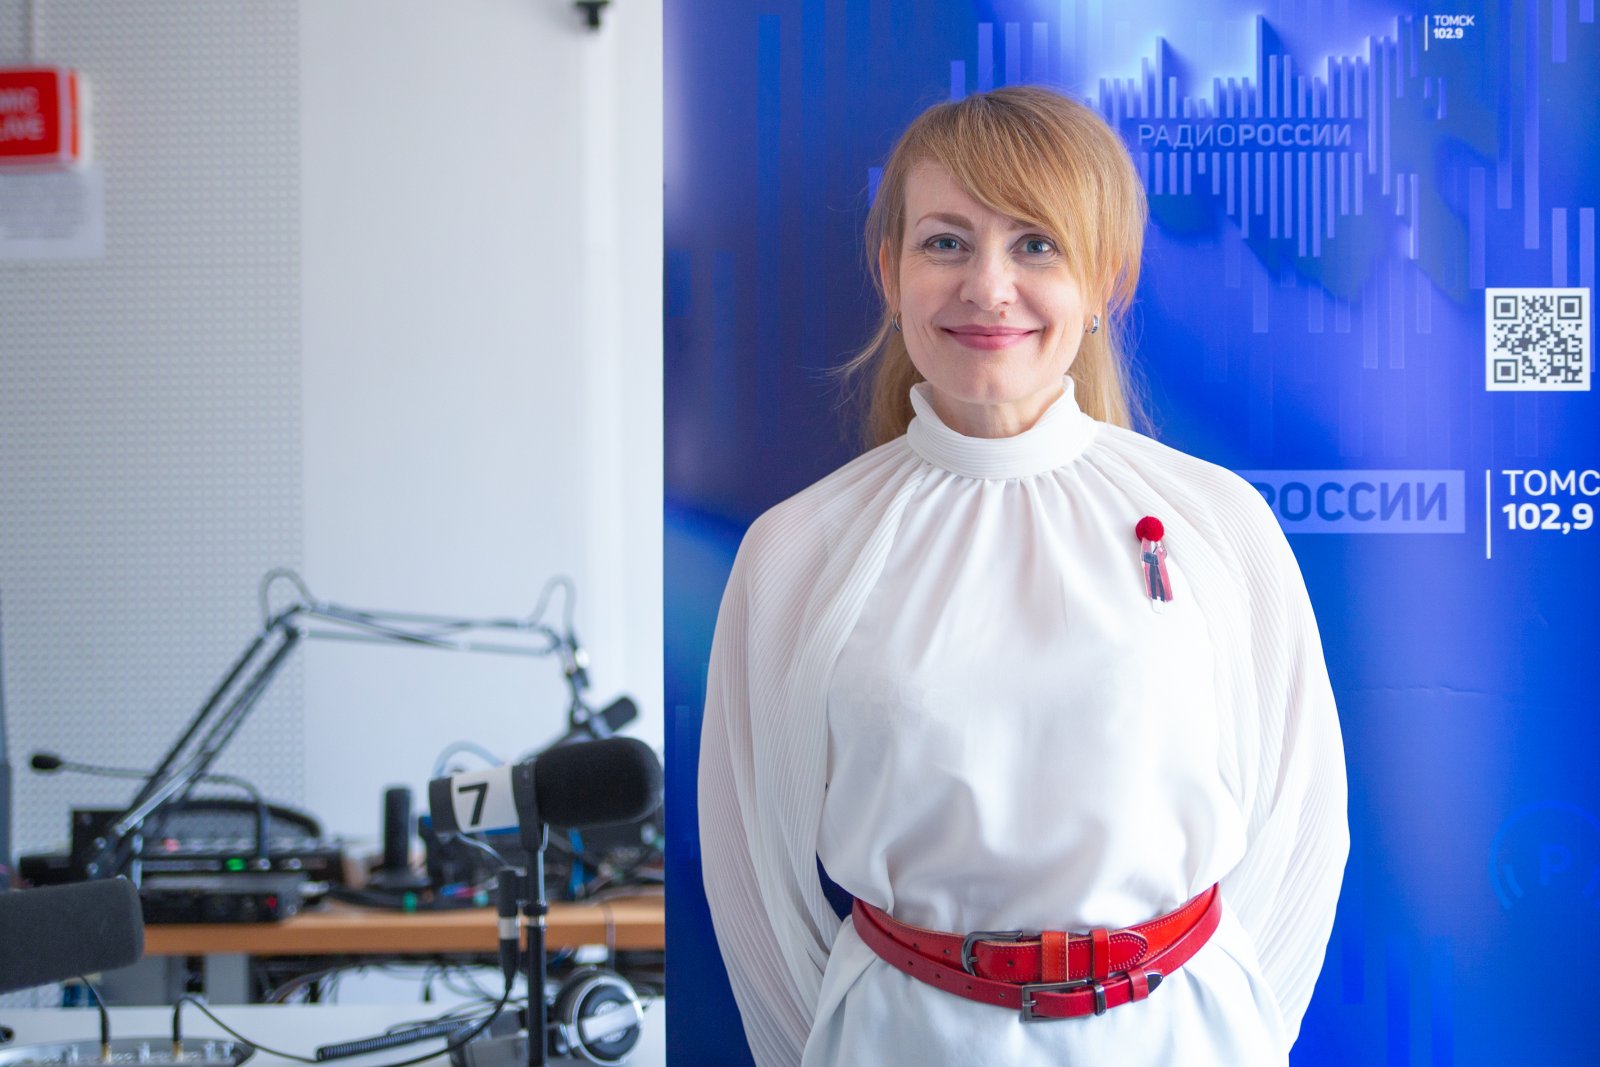 Татьяна Негодина, ведущий программы службы радиовещания ГТРК "Томск"